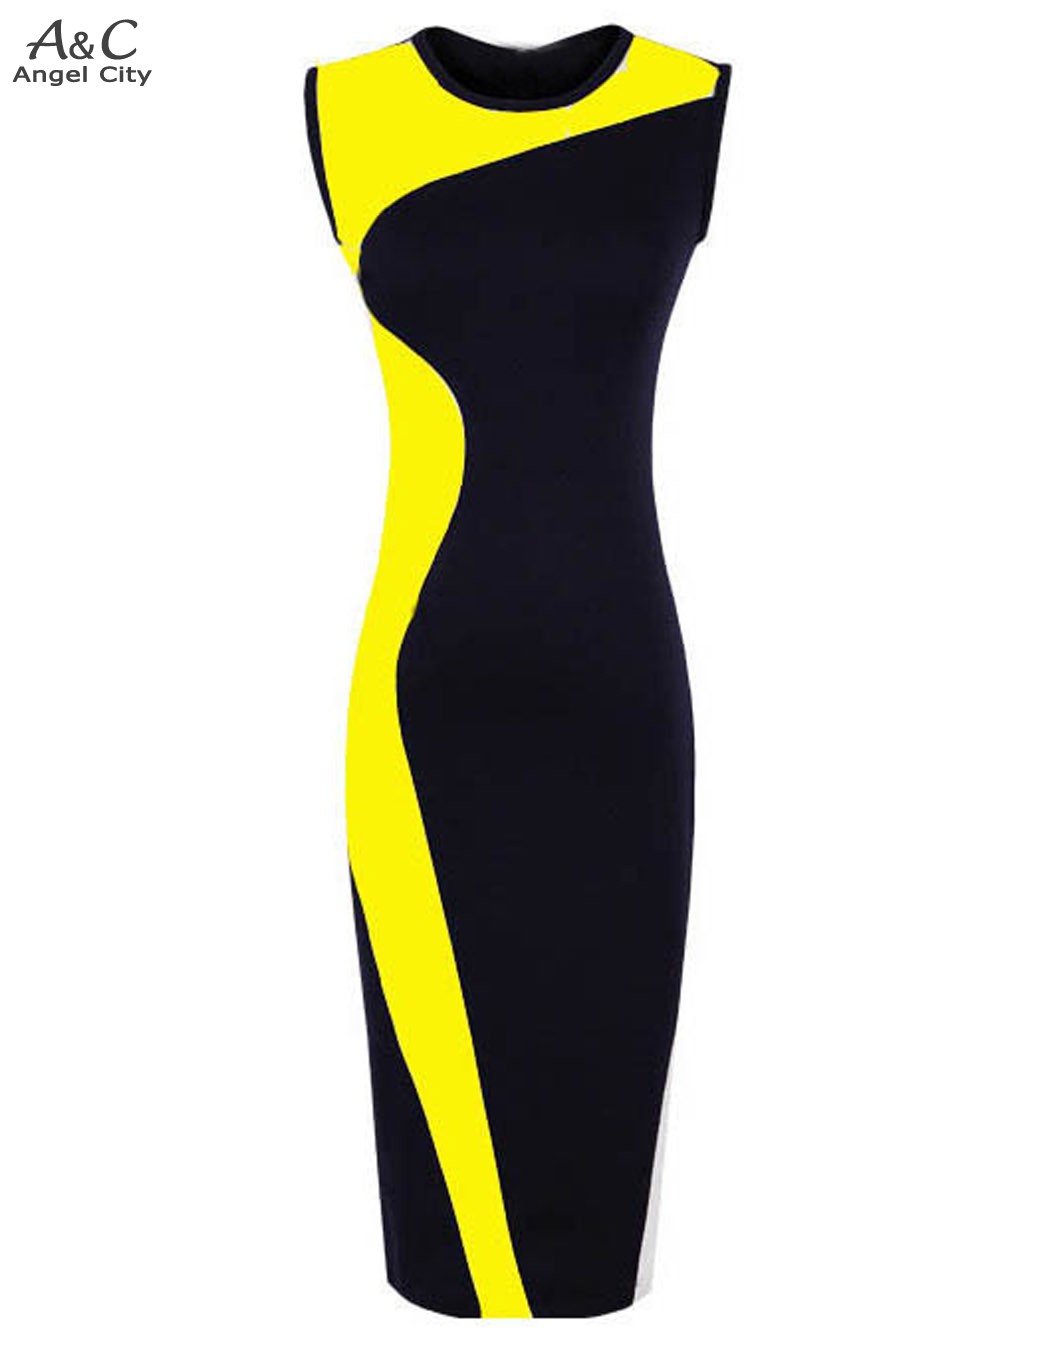 Image of 2016 New Fashion Women Elegant Vintage Geometry Sleeveless Bandage Dress O-Neck Bodycon Party Evening Slim Pencil Dress 51